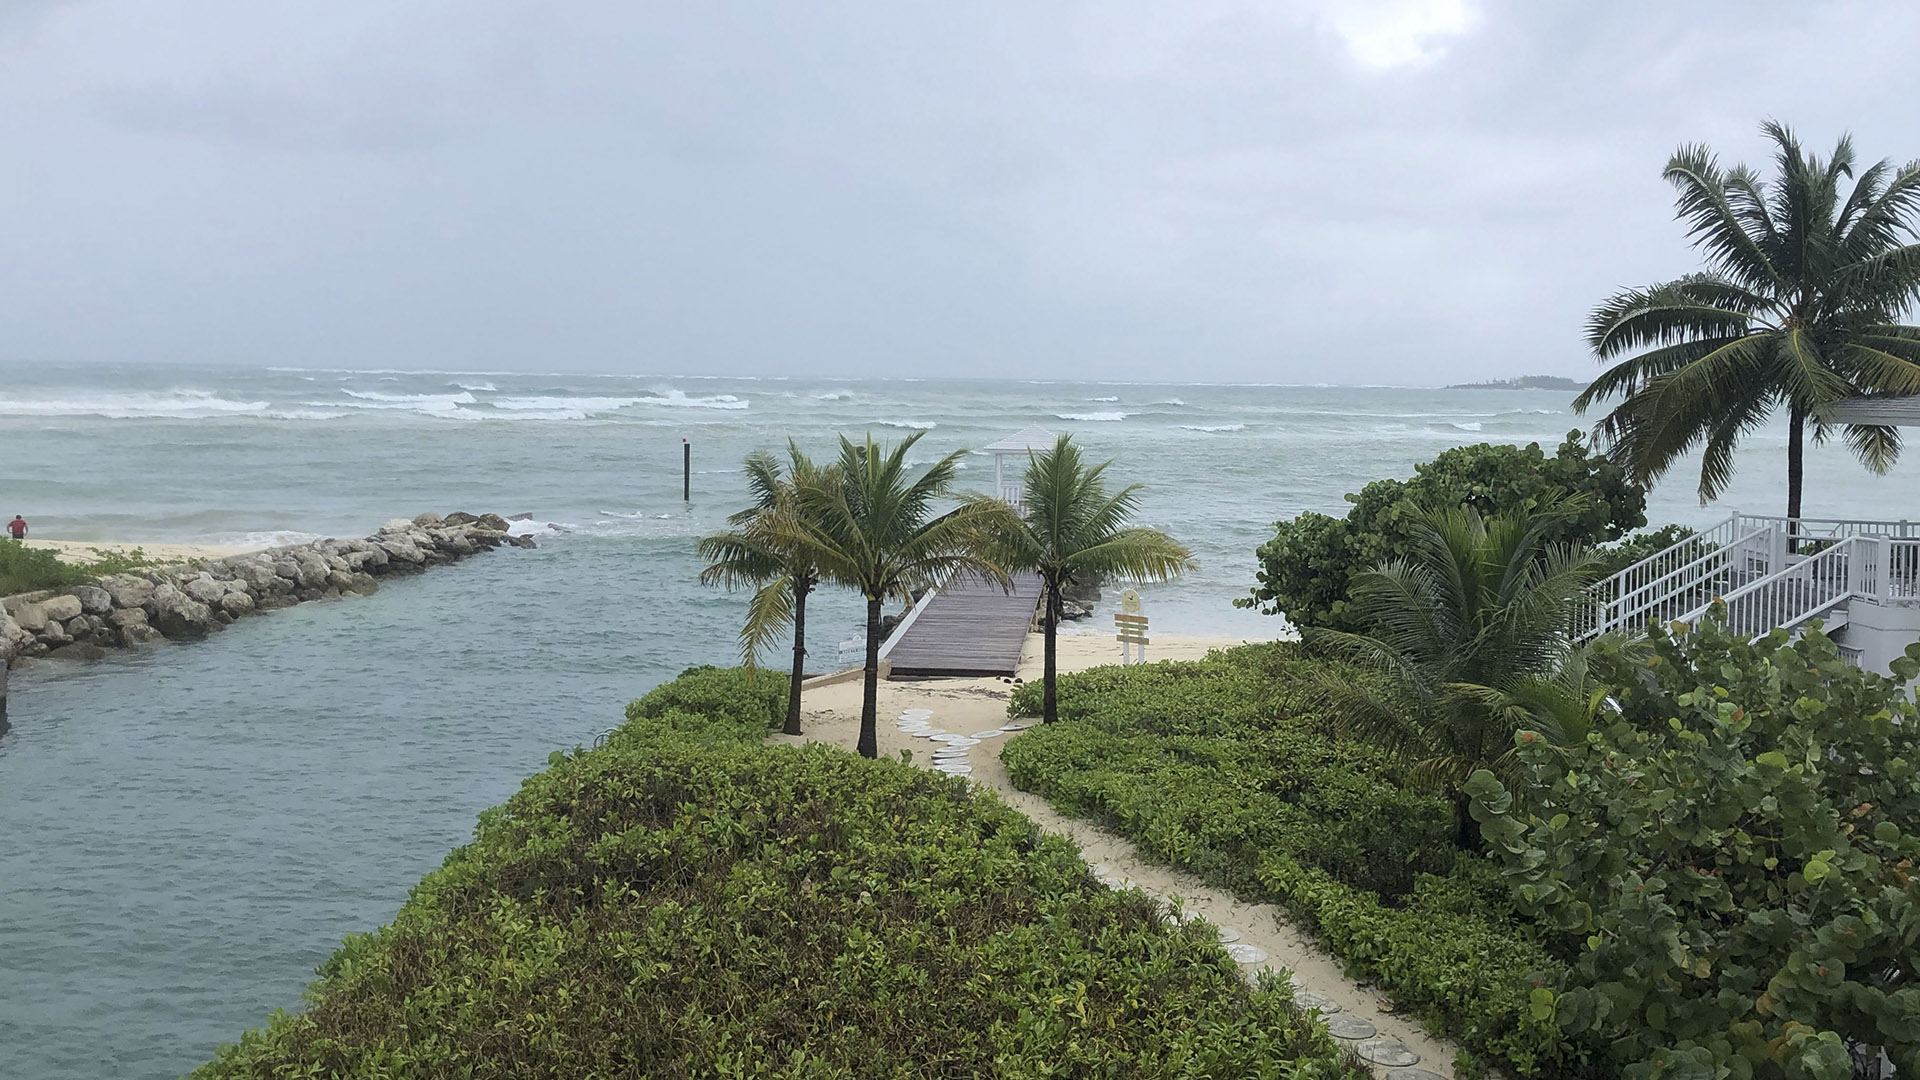 Foto de archivo: una playa de Nassau, Bahamas, en una imagen del 1 de septiembre de 2019 (Lucy WORBOYS / AFP)